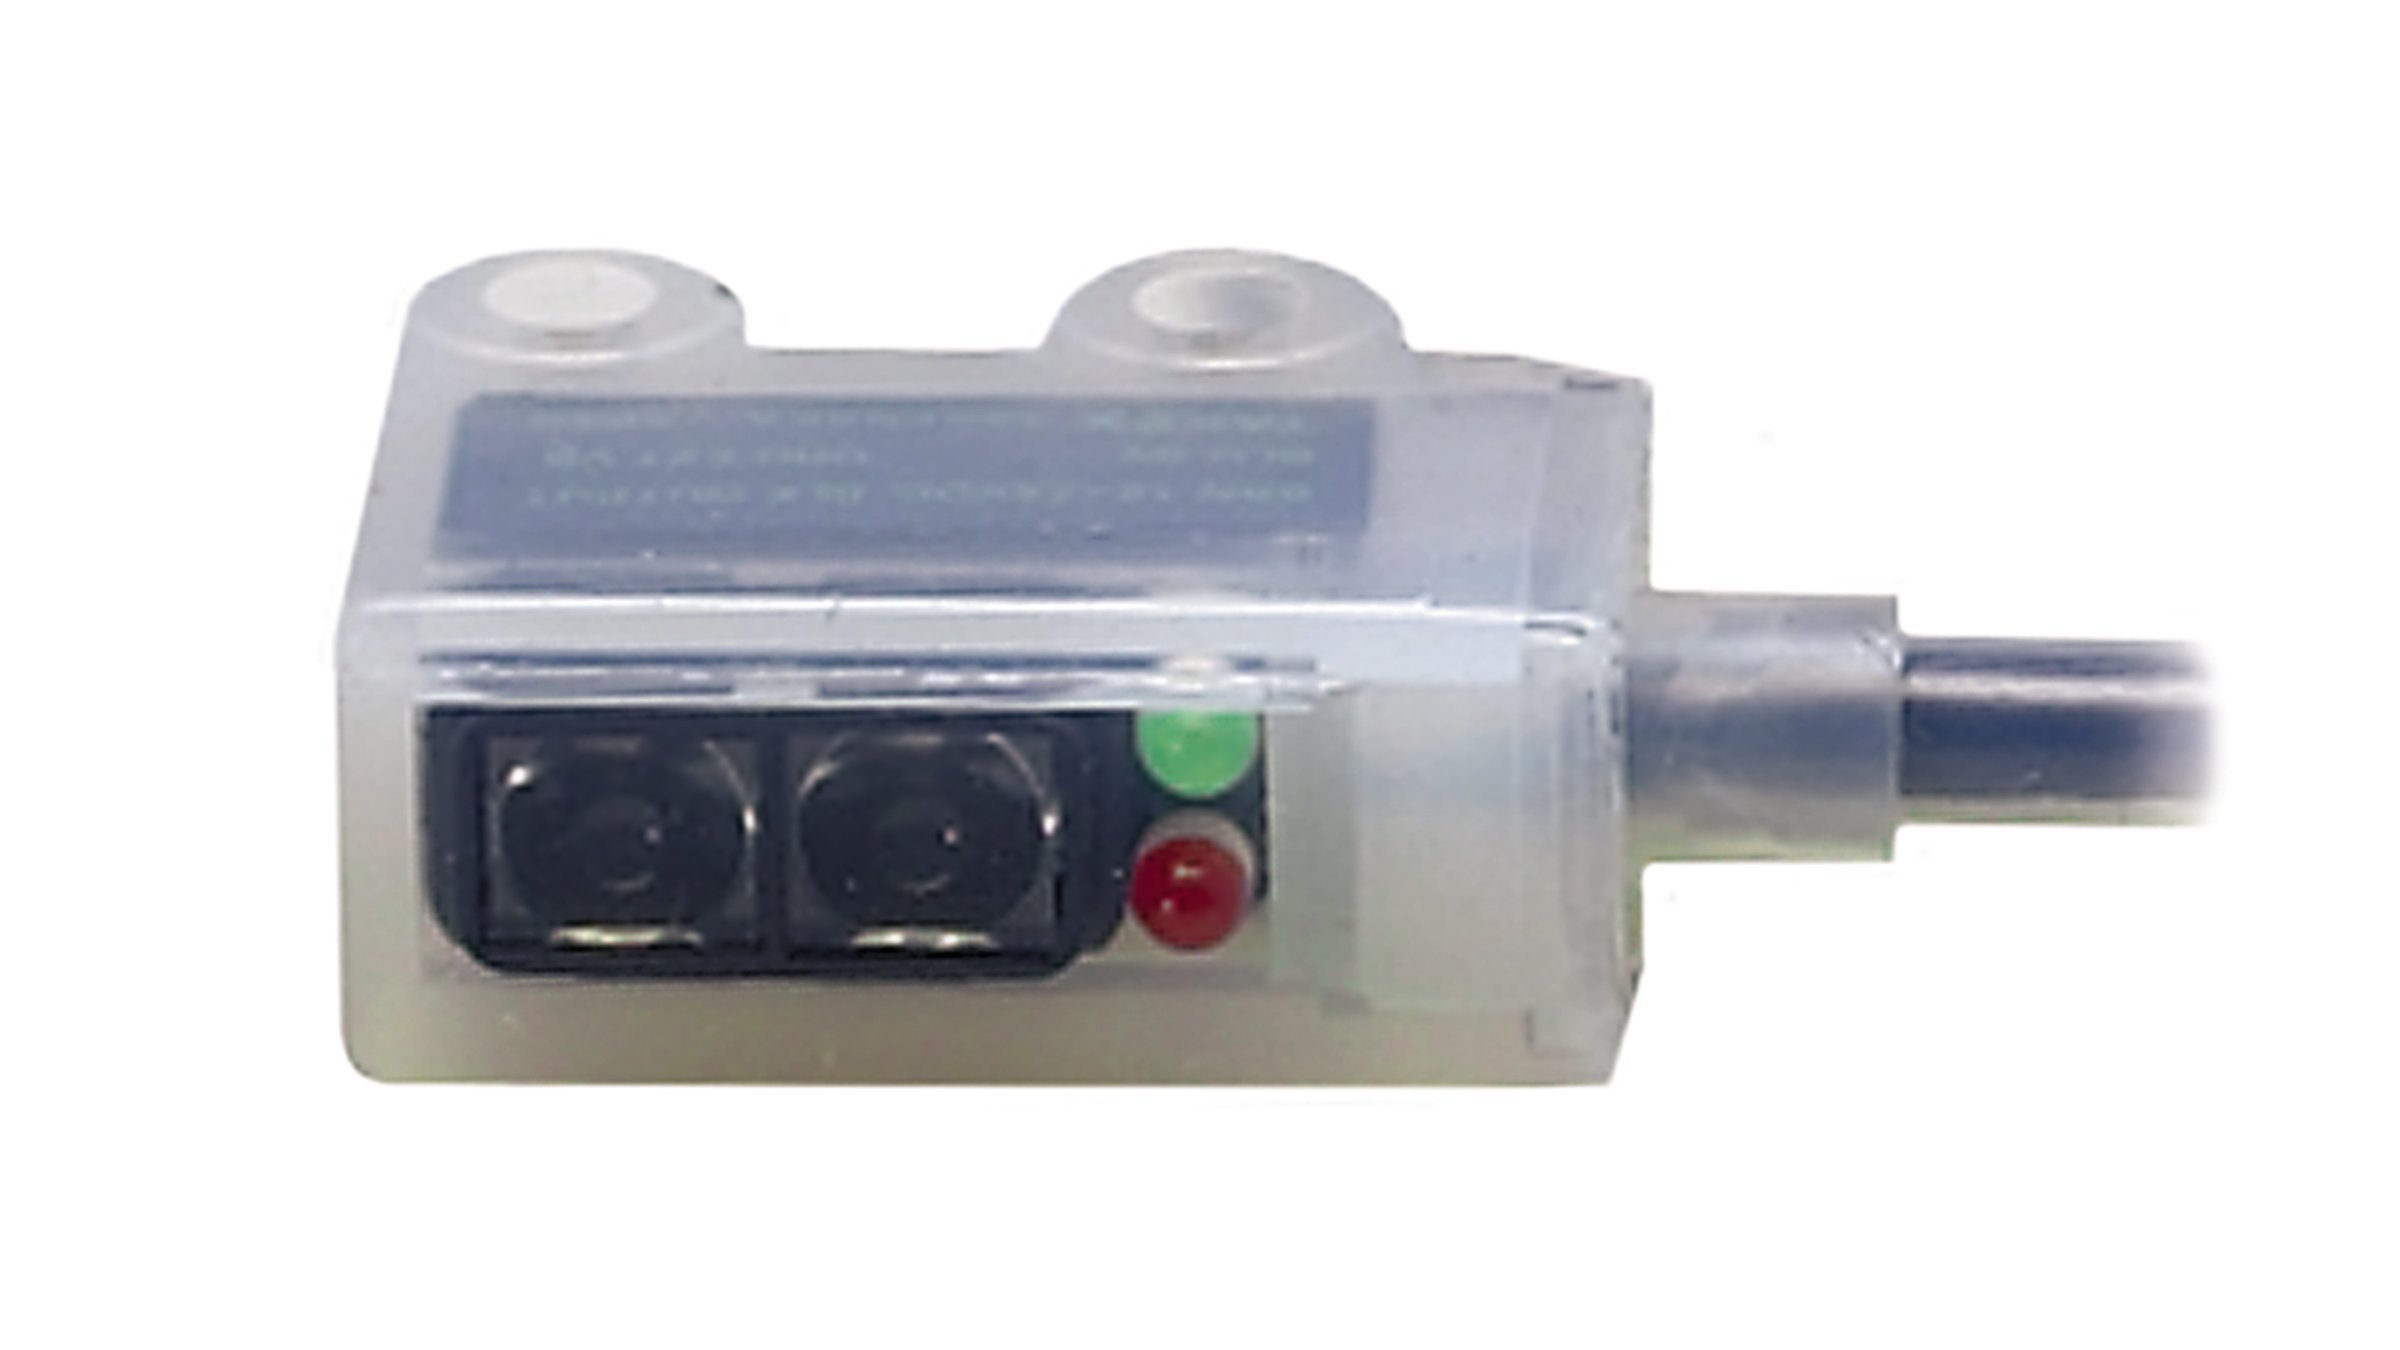 Sensor transparente completamente encapsulado Allen-Bradley con indicadores LED rojo y verde, y cable integrado.